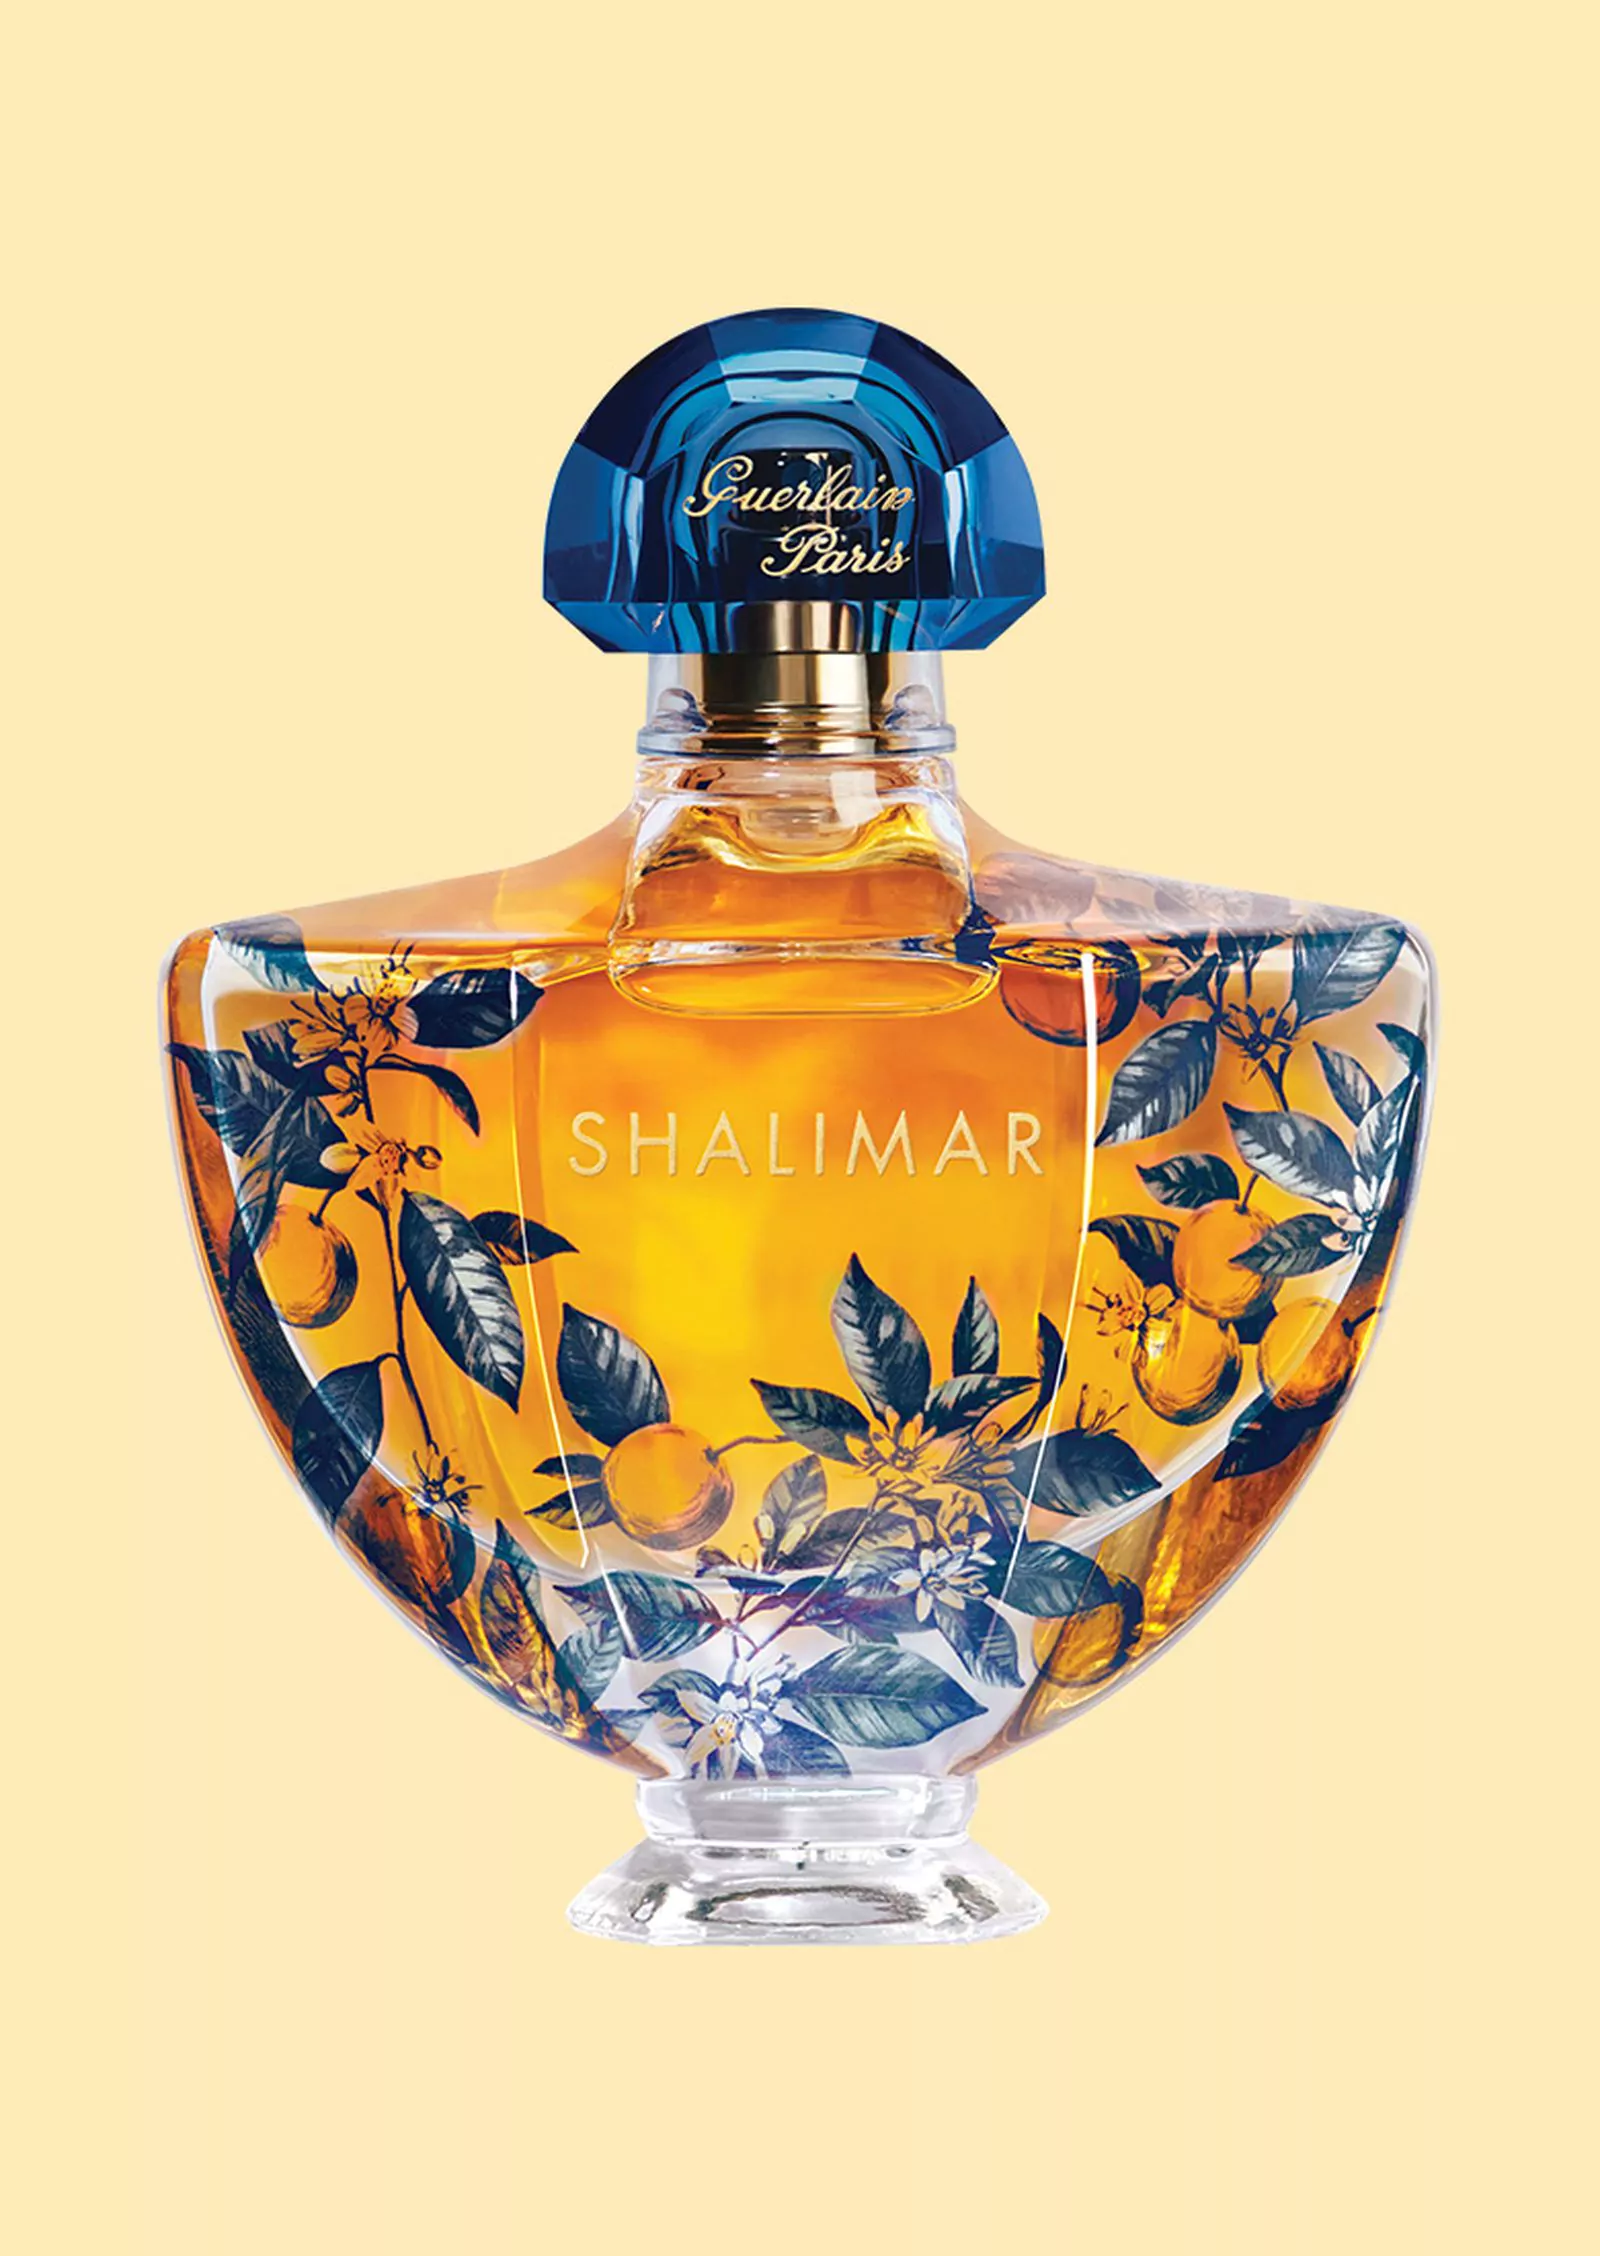 Guerlain парфюмерная вода Shalimar, лимитированная коллекция